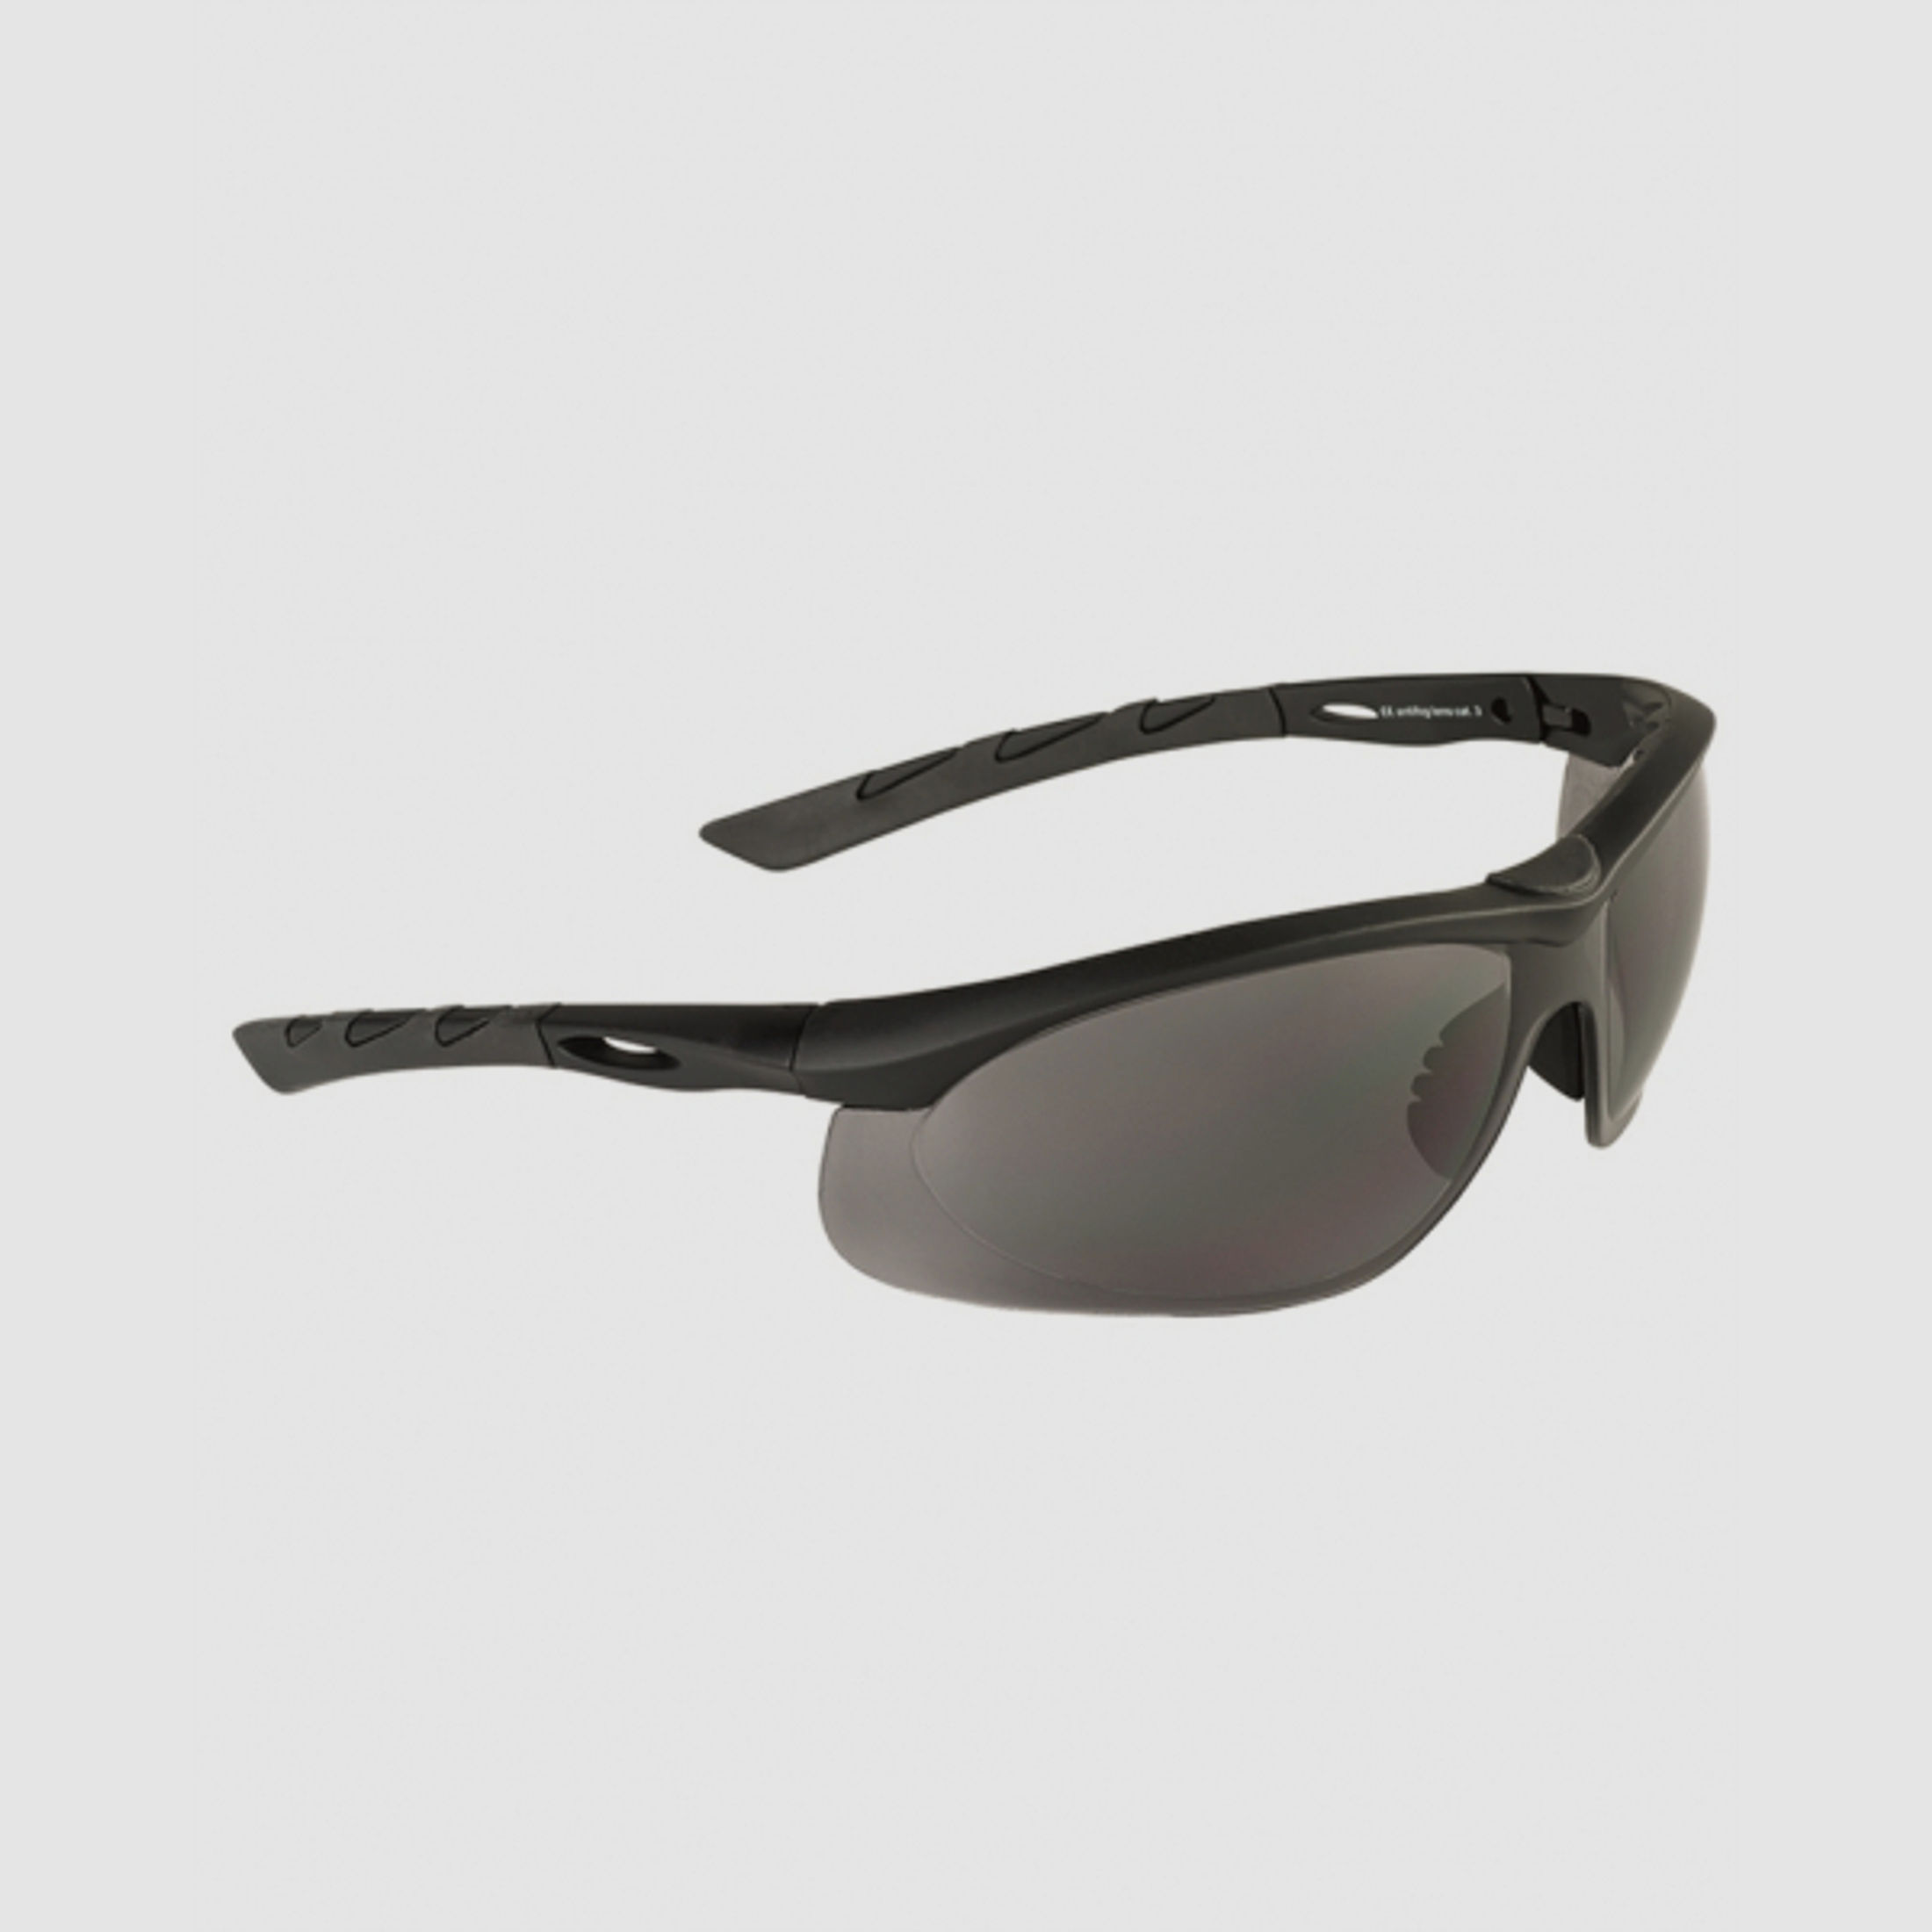 Schießbrille / Tactical Brille Swiss Eye® Lancer Smoke